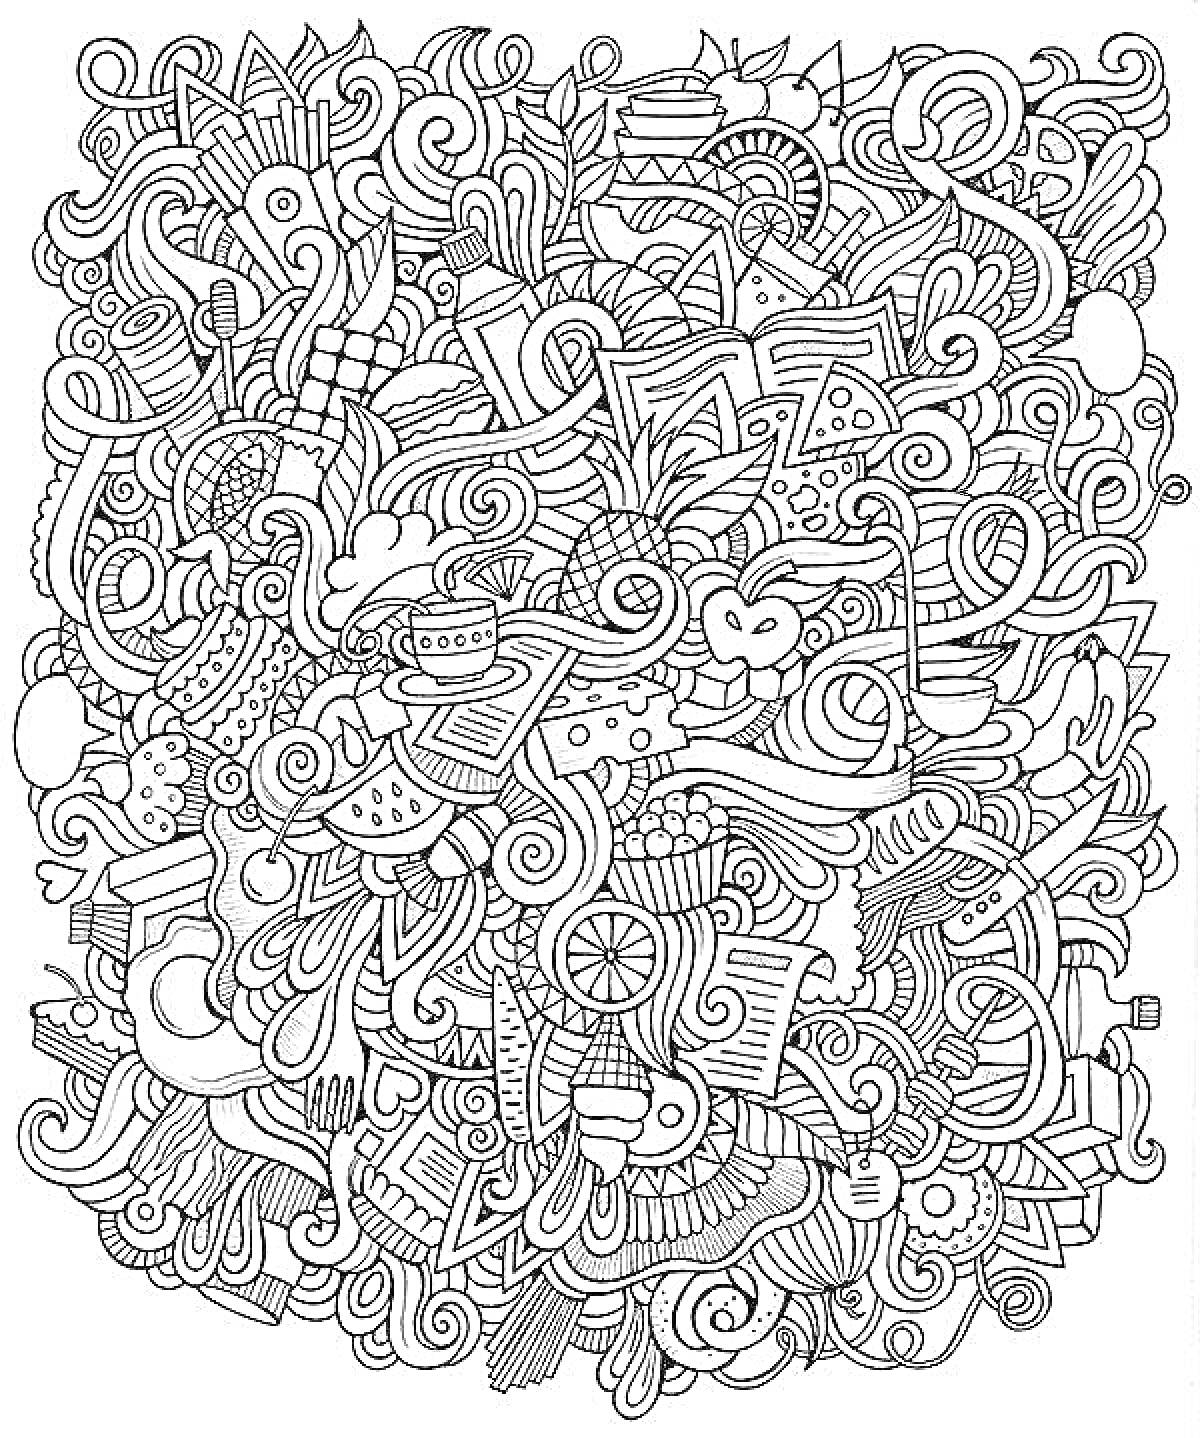 Раскраска Каракули с пиктограммами еды, звездами, сердцами, музыкальными нотами и различными абстрактными формами